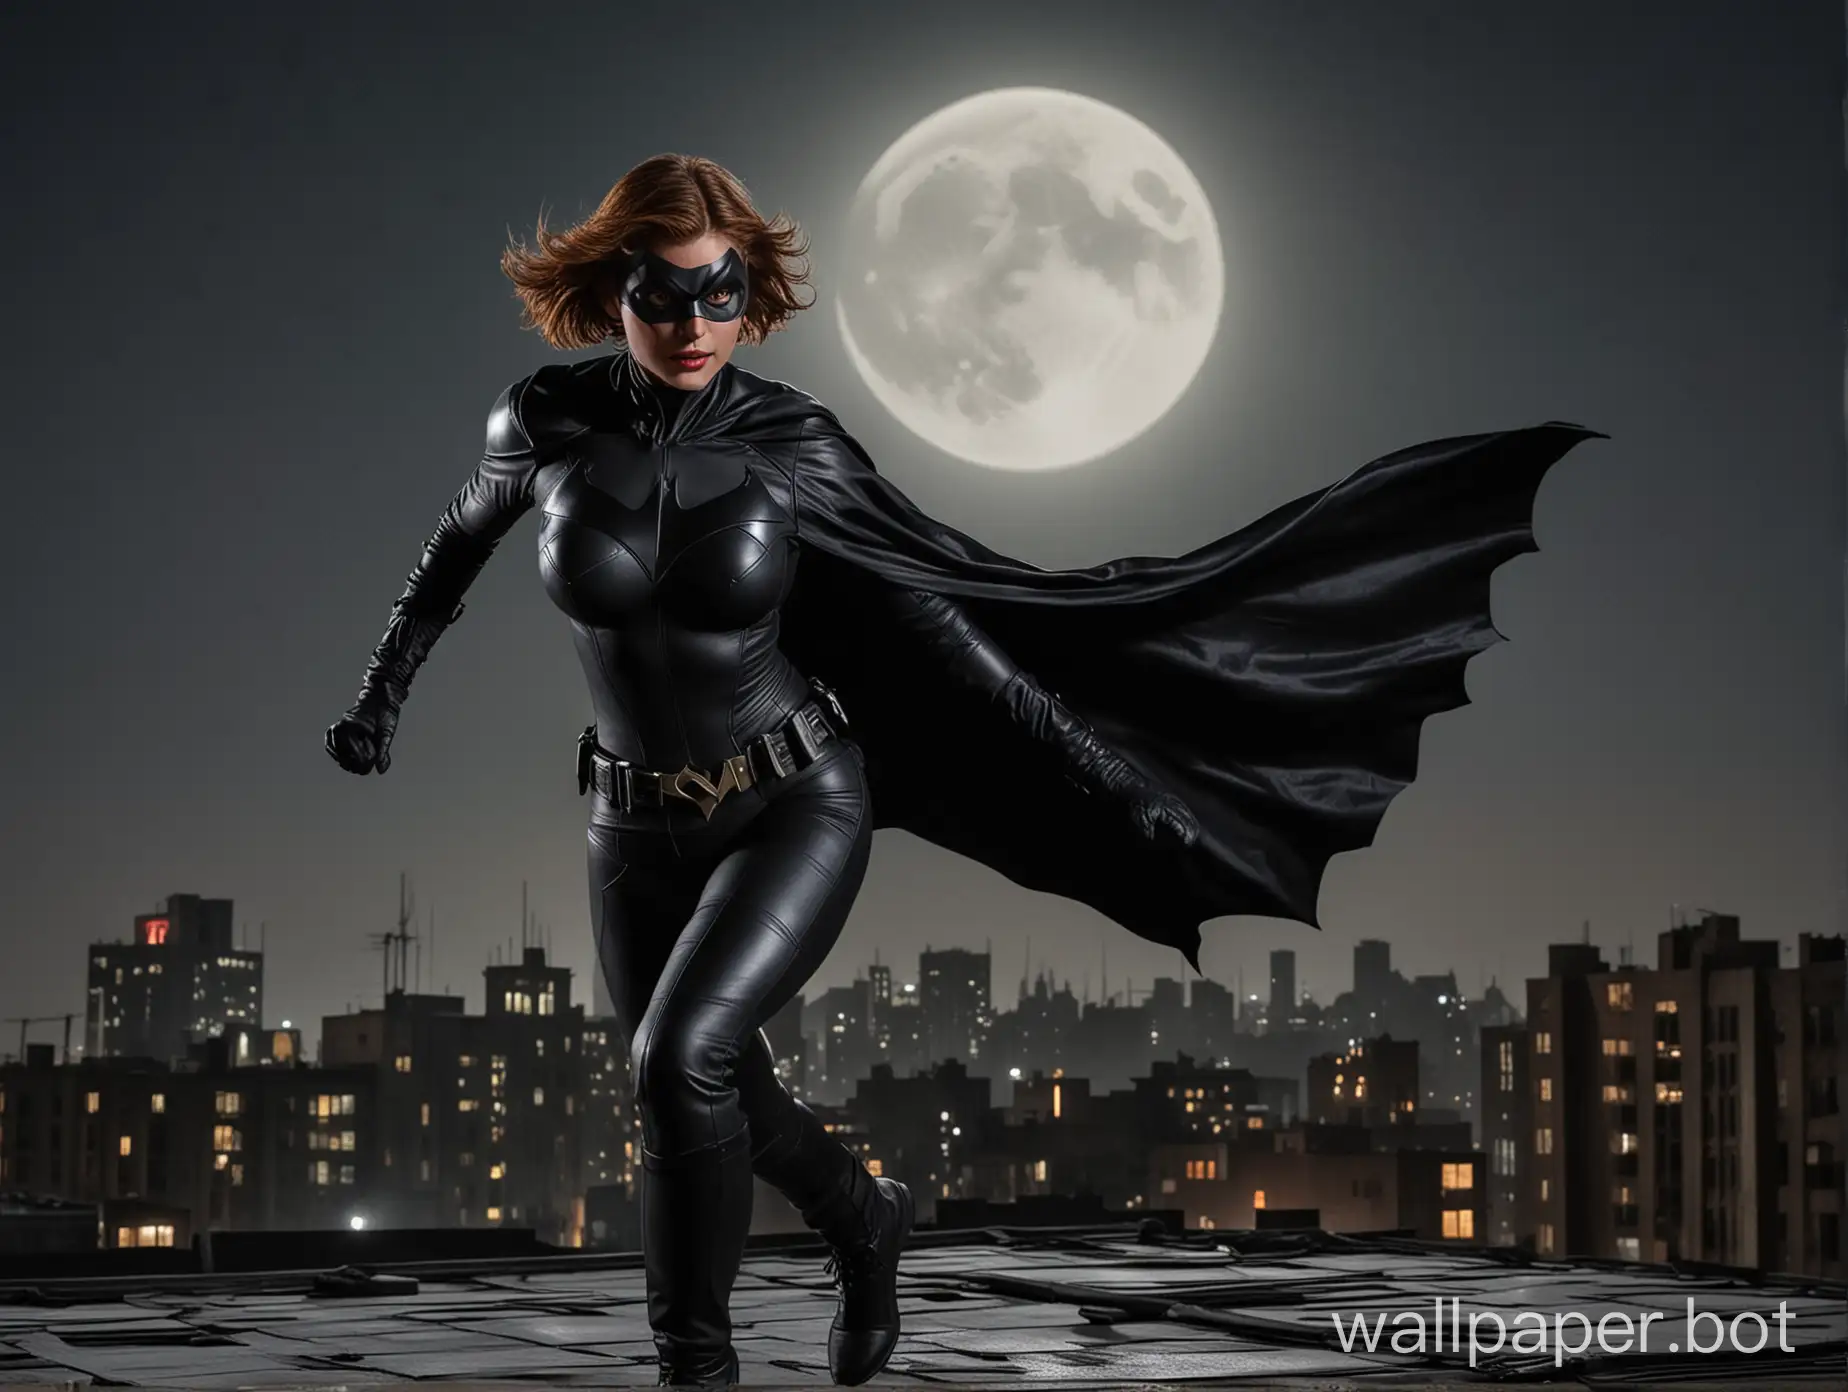 Dark-Knight-Batwoman-Running-on-Rooftop-Under-Moonlight